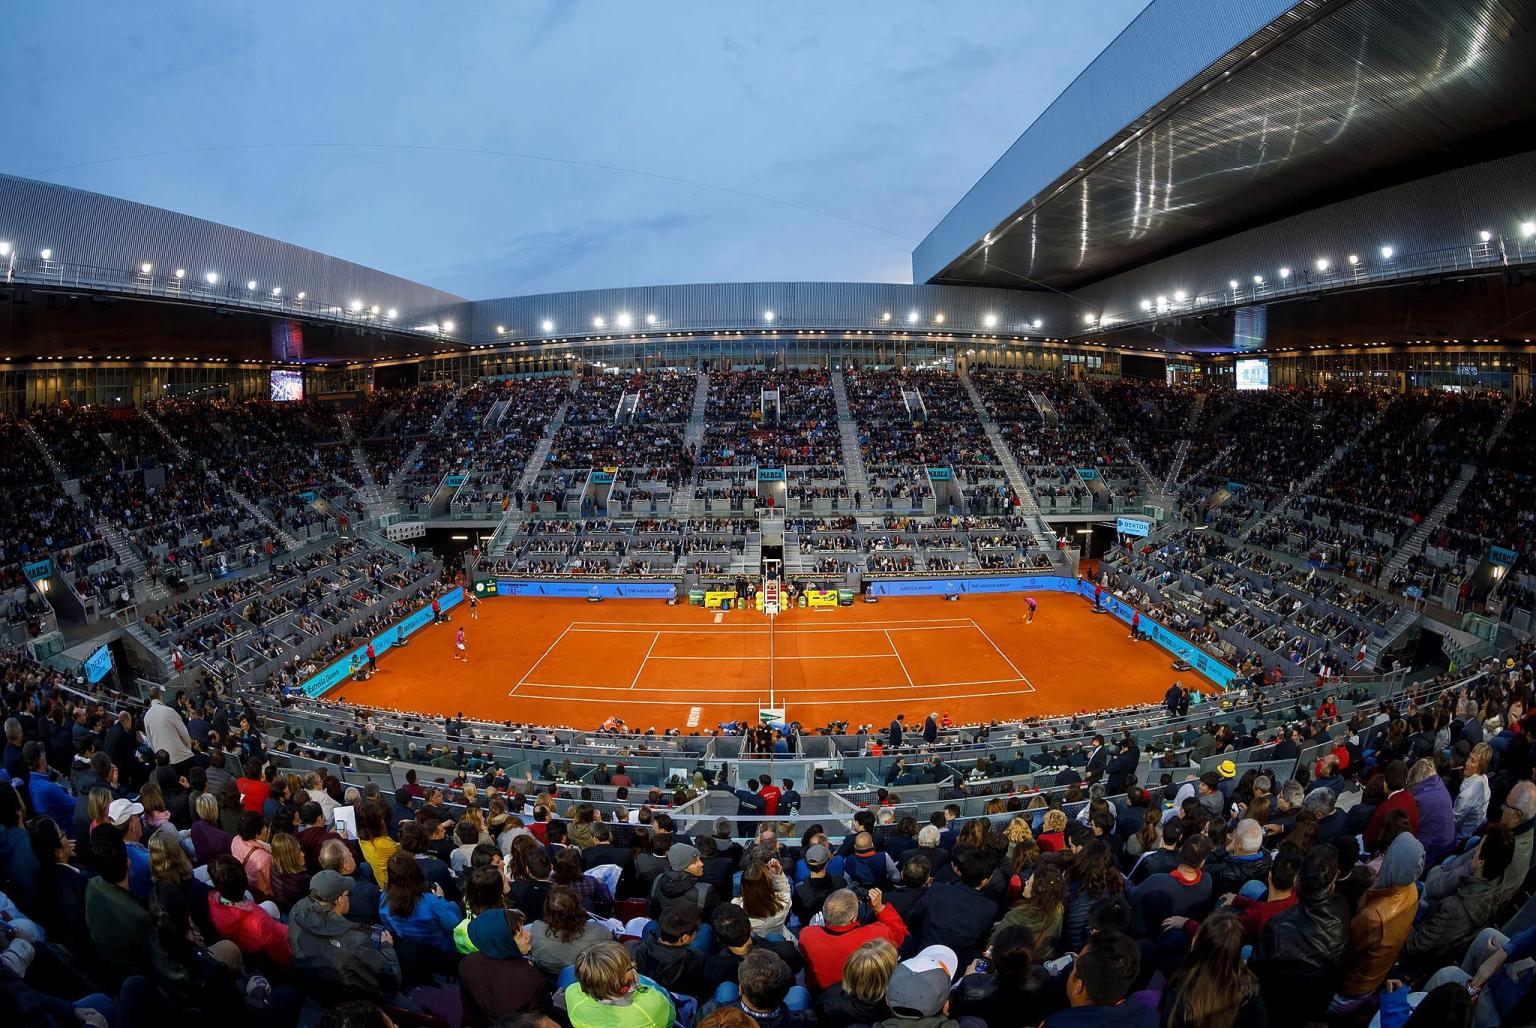 فيروس كورونا يتسبب في إقامة بطولة مدريد المفتوحة لكرة المضرب في منازل اللاعبين